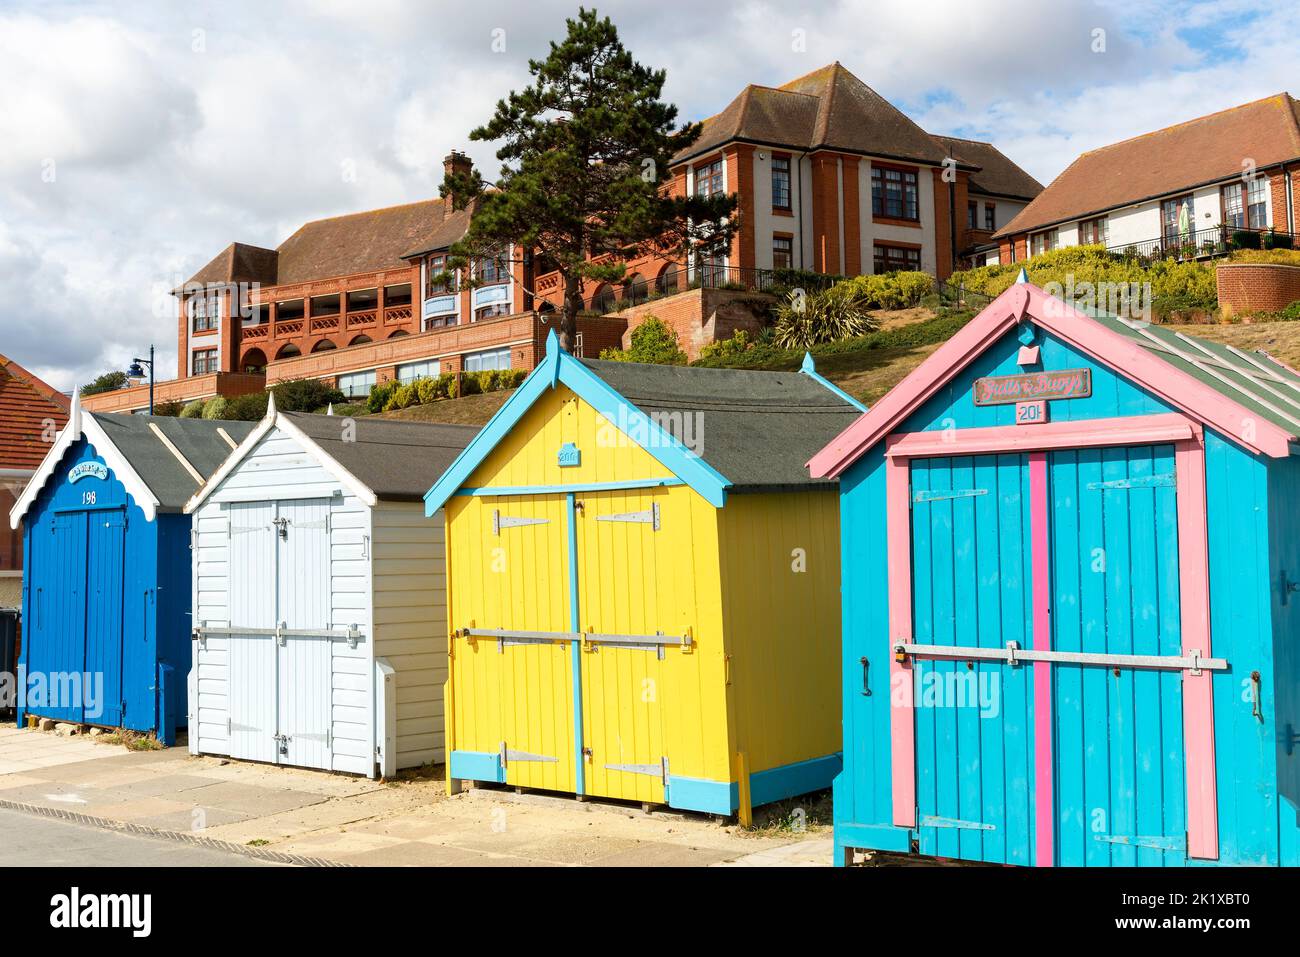 Coloridas cabañas en la playa frente al mar, edificio del hospital Barlet detrás, Felixstowe, Suffolk, Inglaterra, Reino Unido Foto de stock